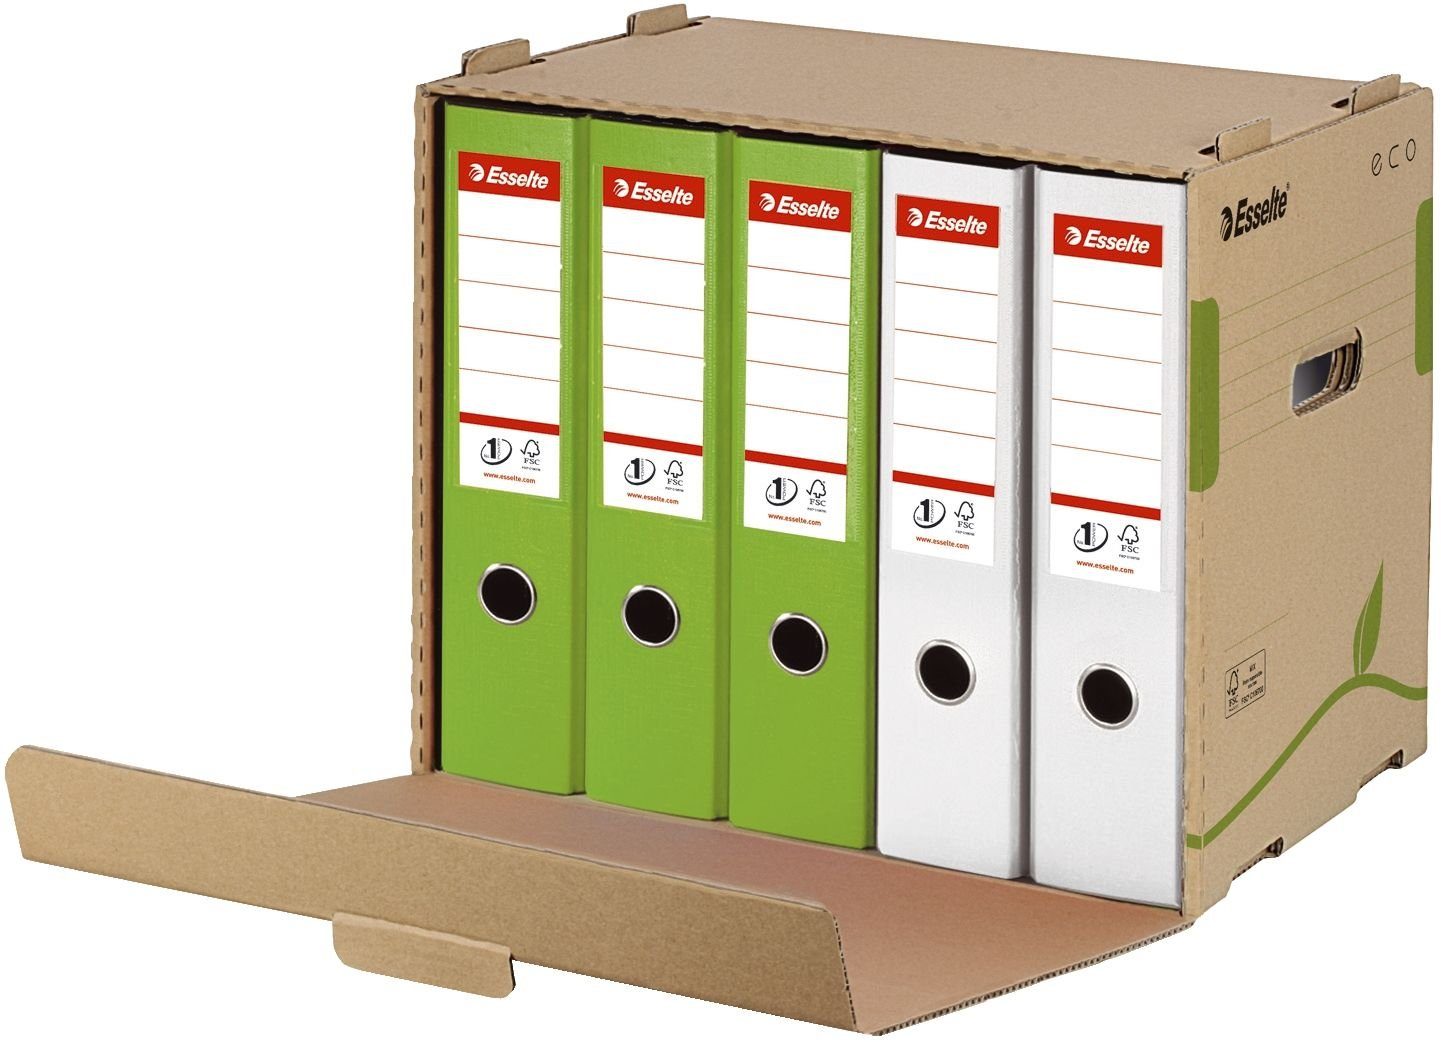 ESSELTE Archivcontainer Esselte Archiv-Container ECO für Ordner, braun